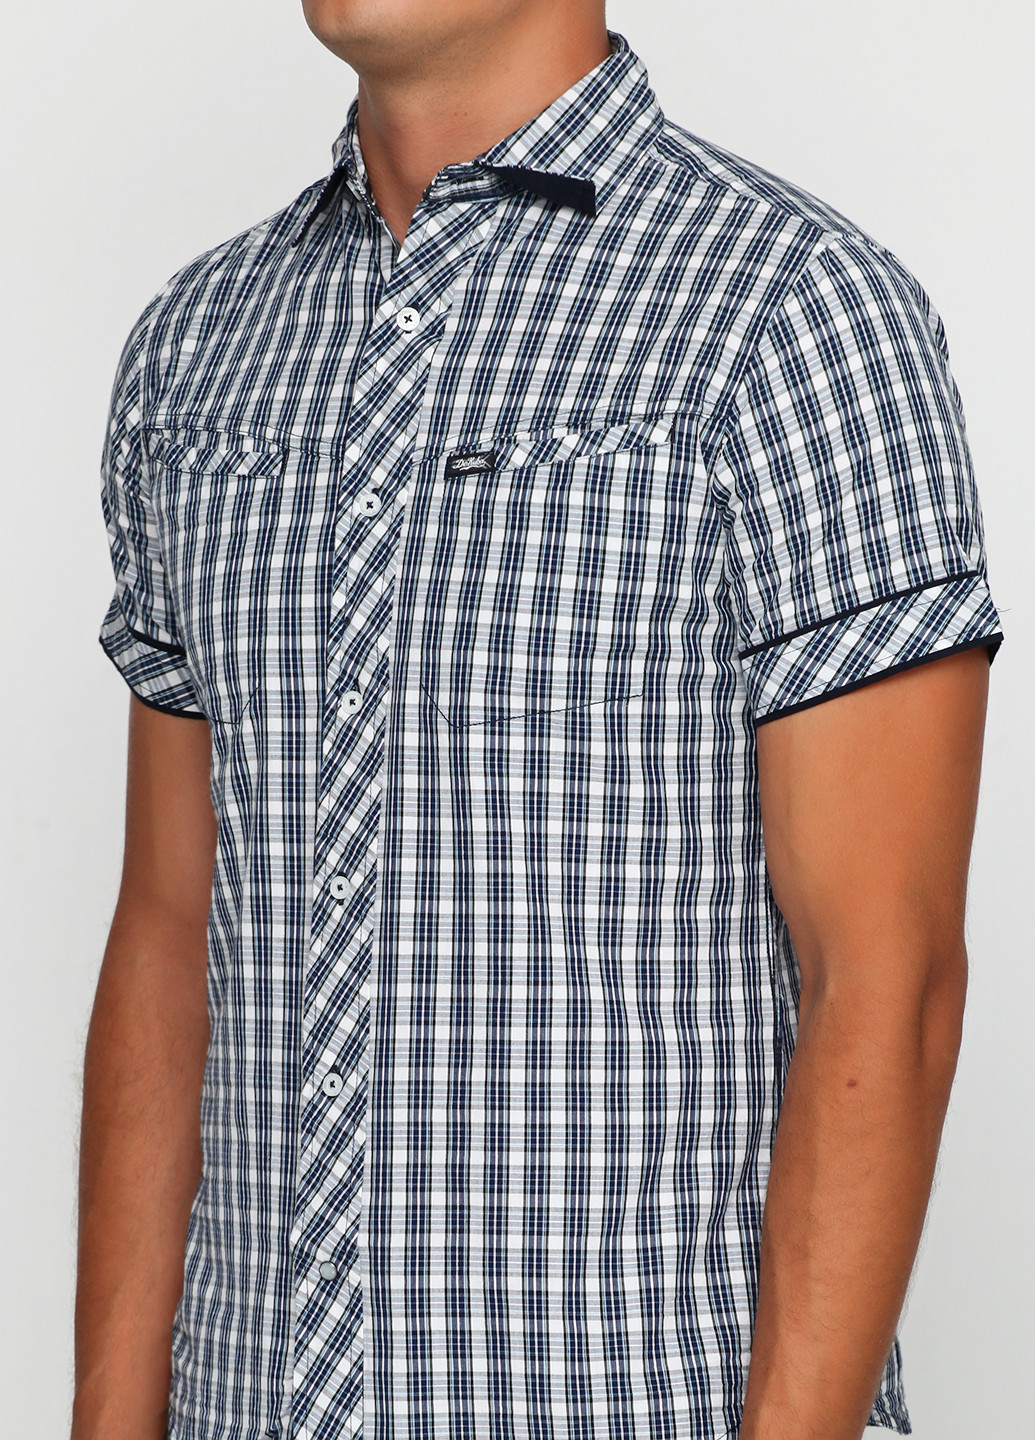 Цветная кэжуал рубашка с геометрическим узором De Kuba с коротким рукавом